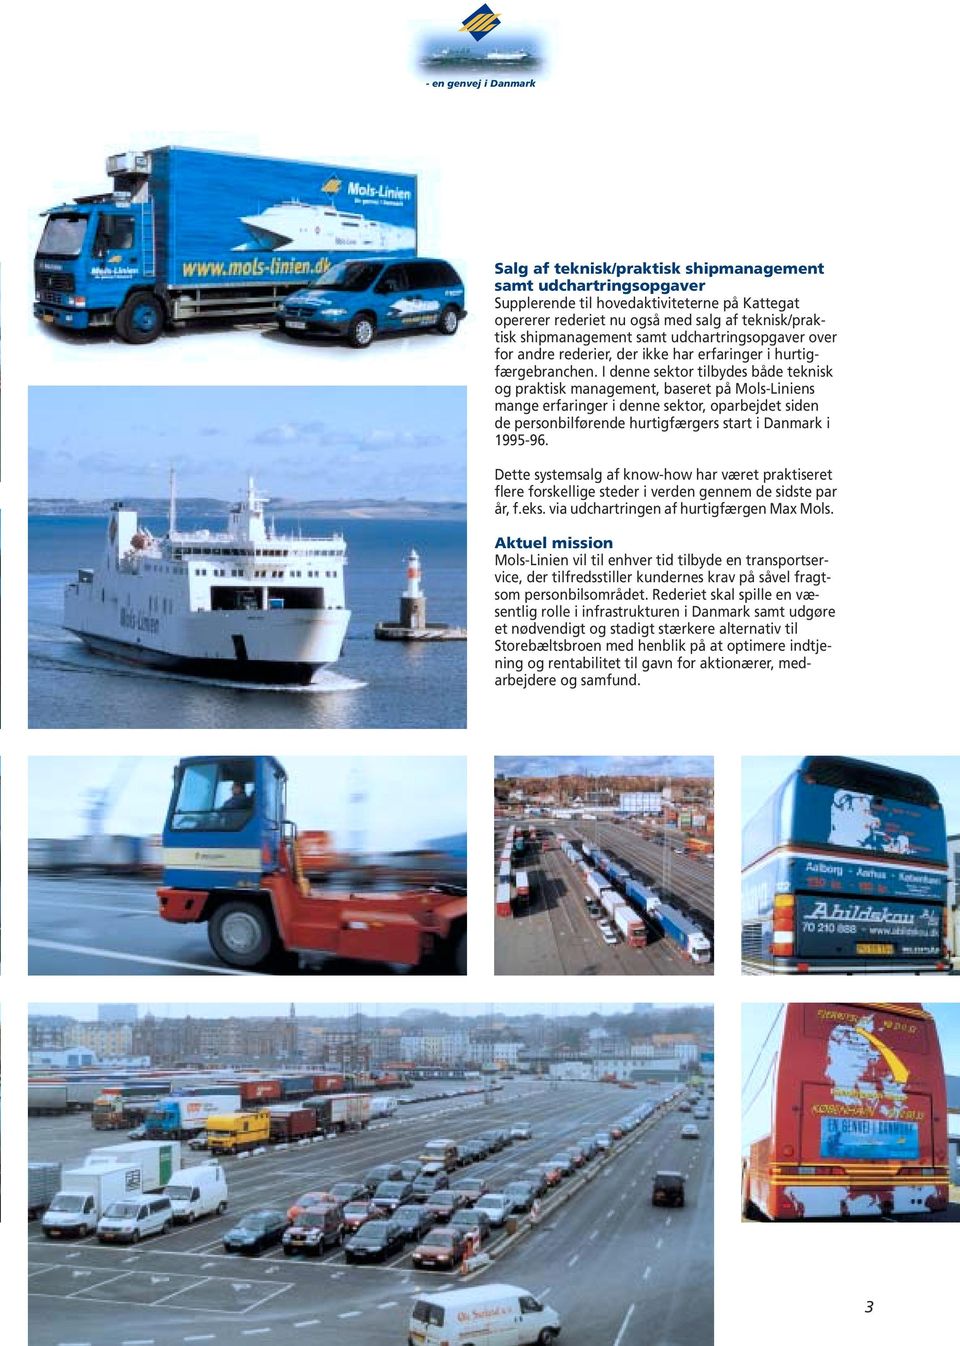 I denne sektor tilbydes både teknisk og praktisk management, baseret på Mols-Liniens mange erfaringer i denne sektor, oparbejdet siden de personbilførende hurtigfærgers start i Danmark i 1995-96.